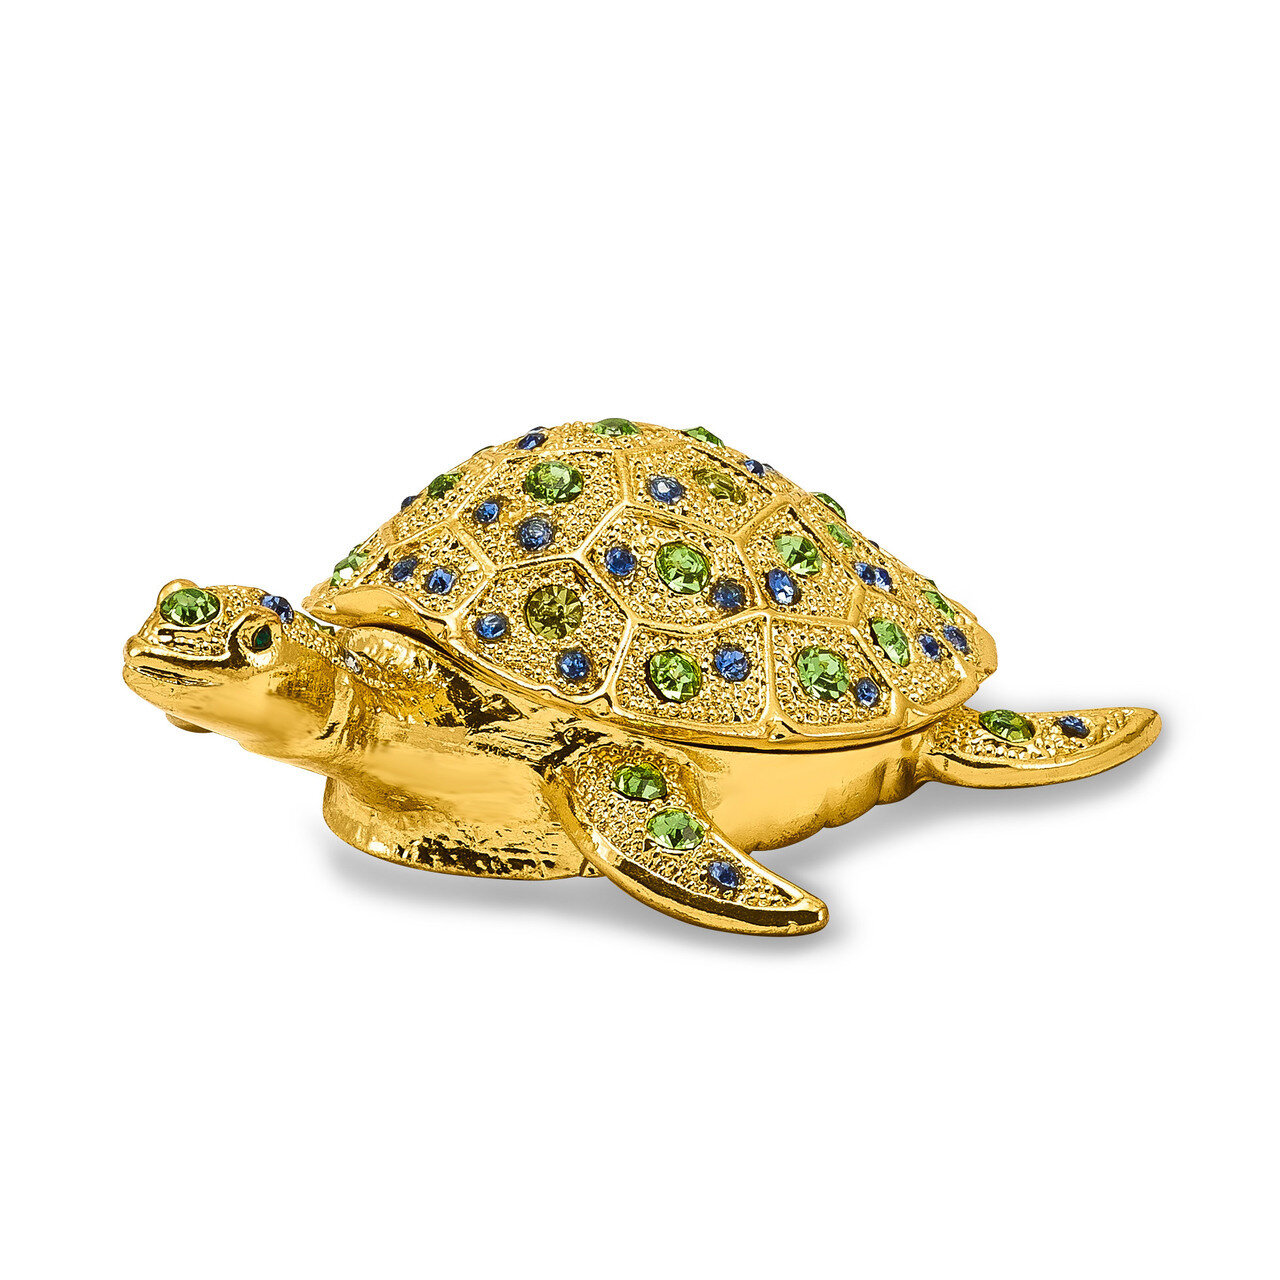 Golden Sea Turtle Trinket Box Enamel on Pewter by Jere